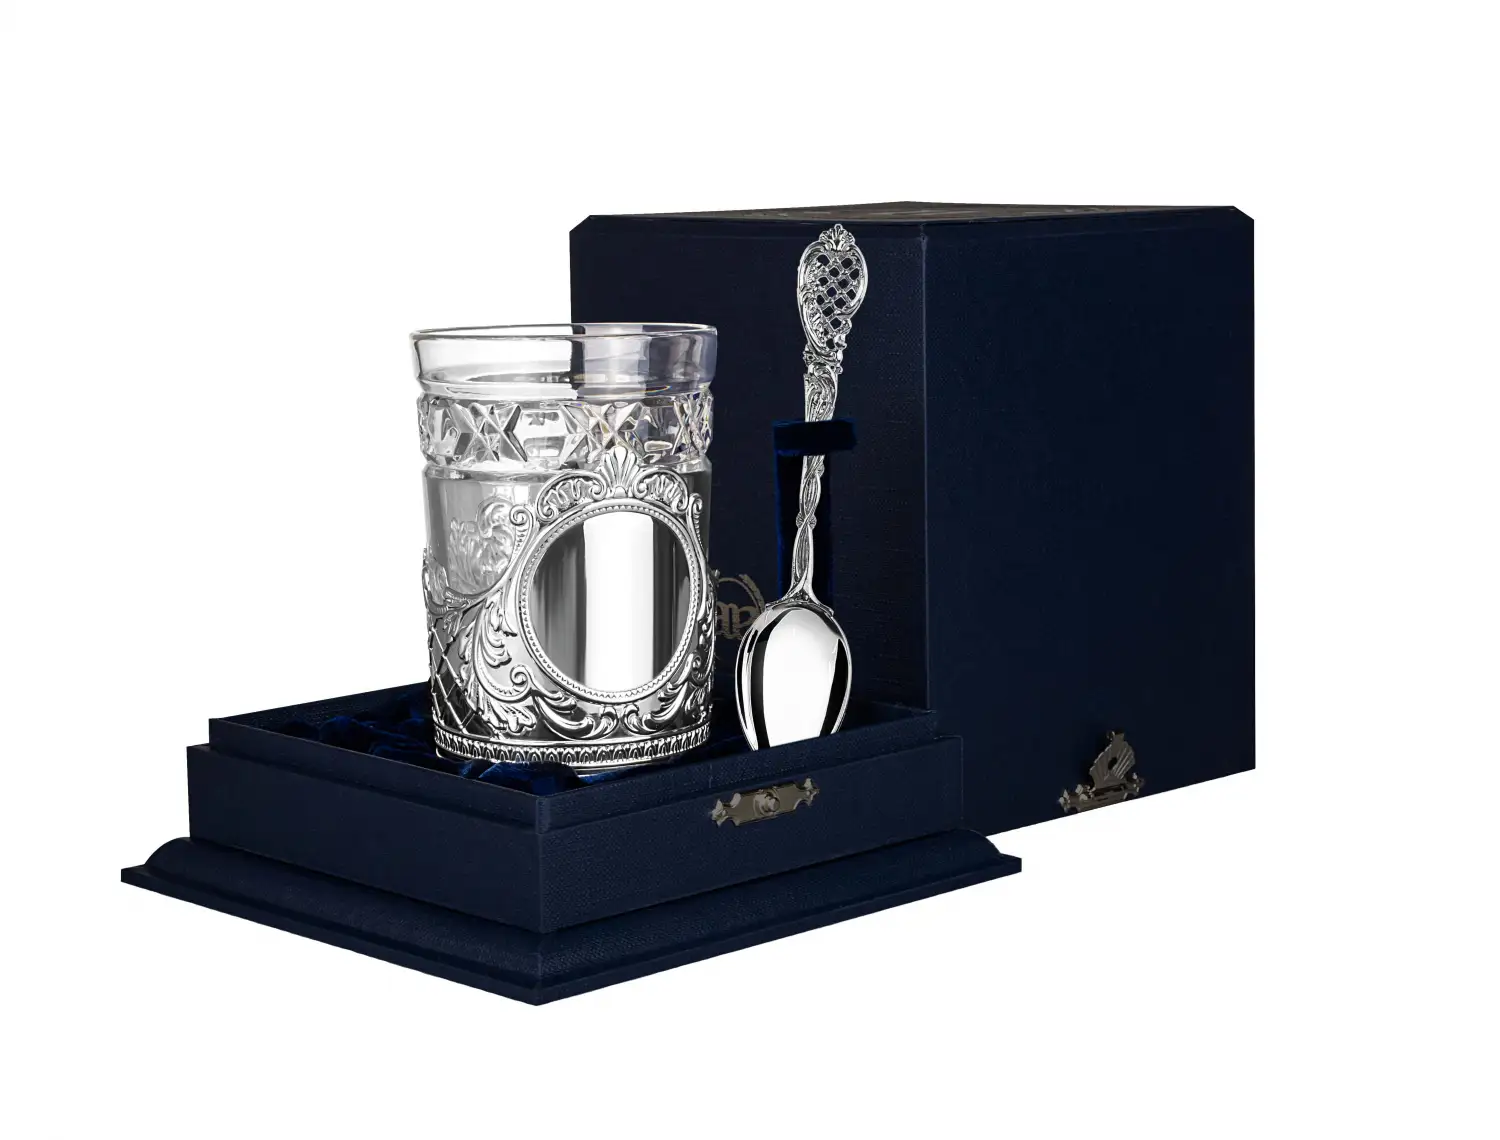 Набор для чая Барокко: ложка, стакан, подстаканник (Серебро 925) набор для чая ажур ложка стакан подстаканник серебро 925